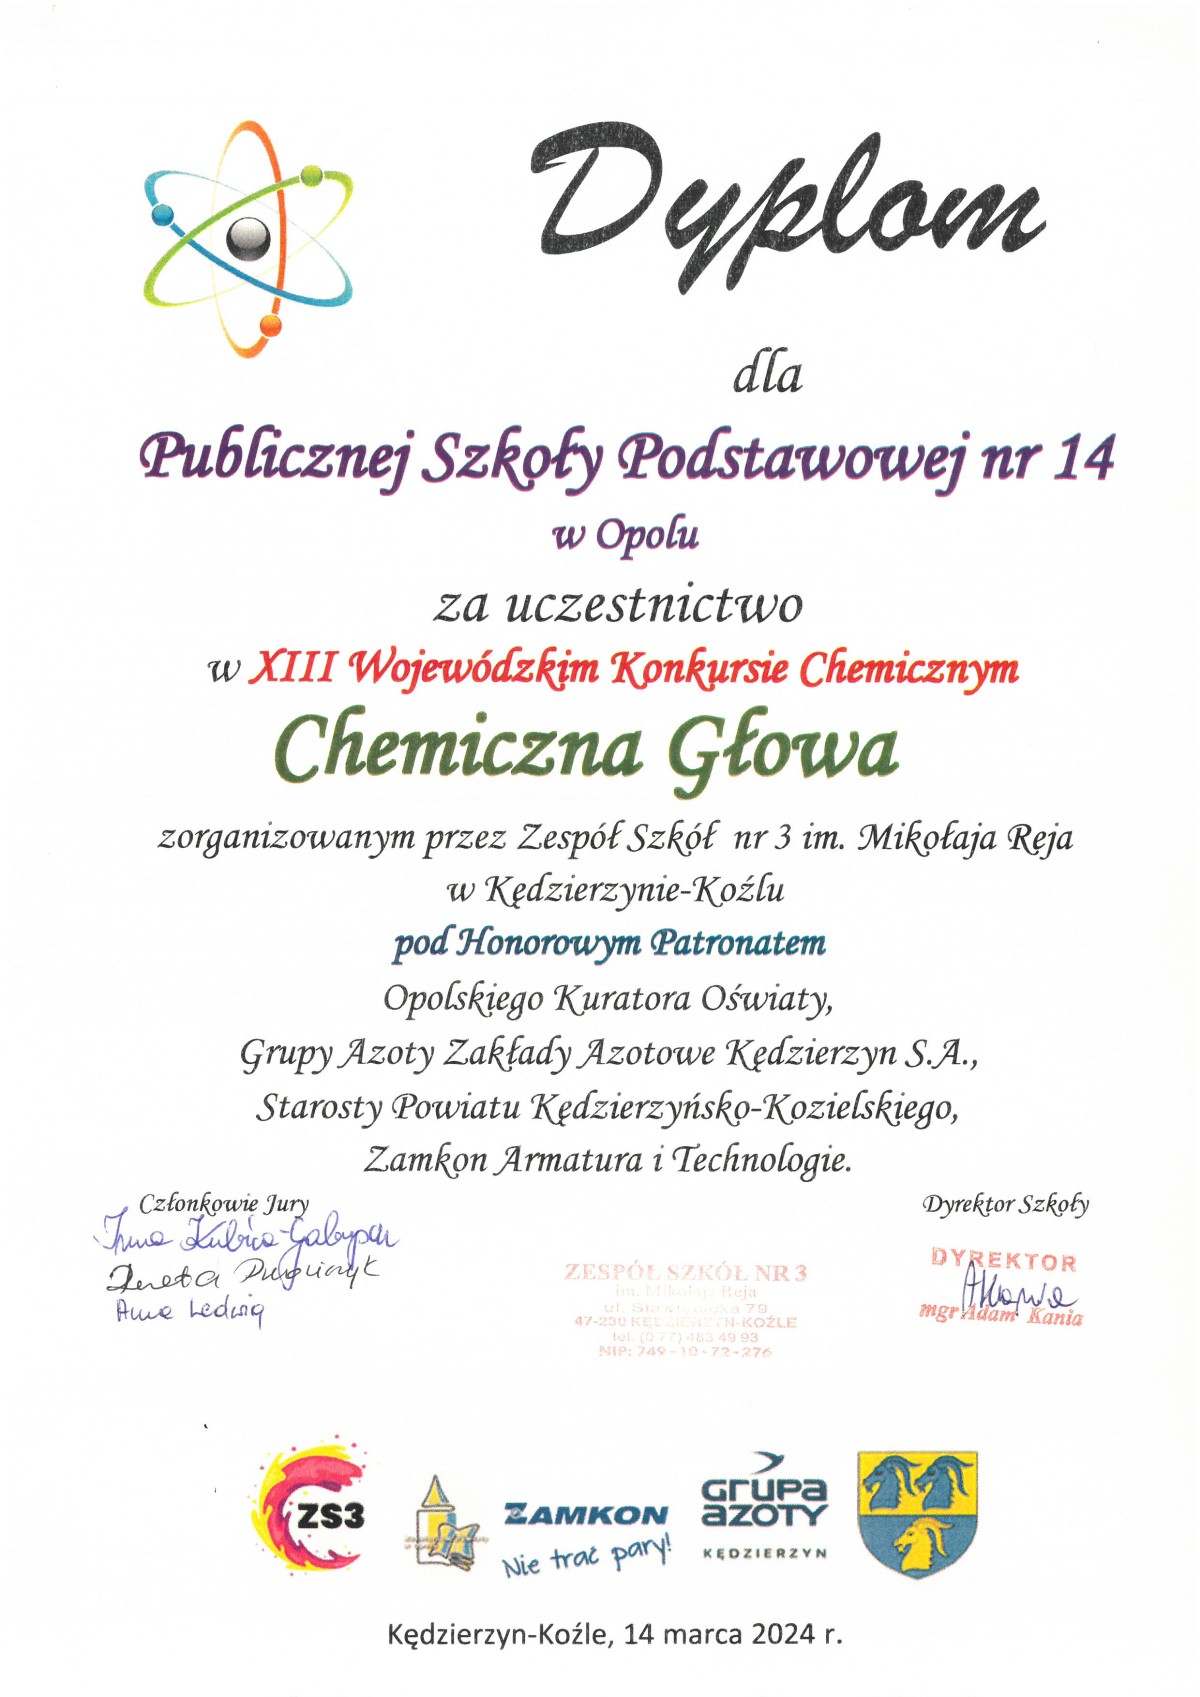 Dyplom dla PSP14 za udział w konkursie "Chemiczna Głowa"